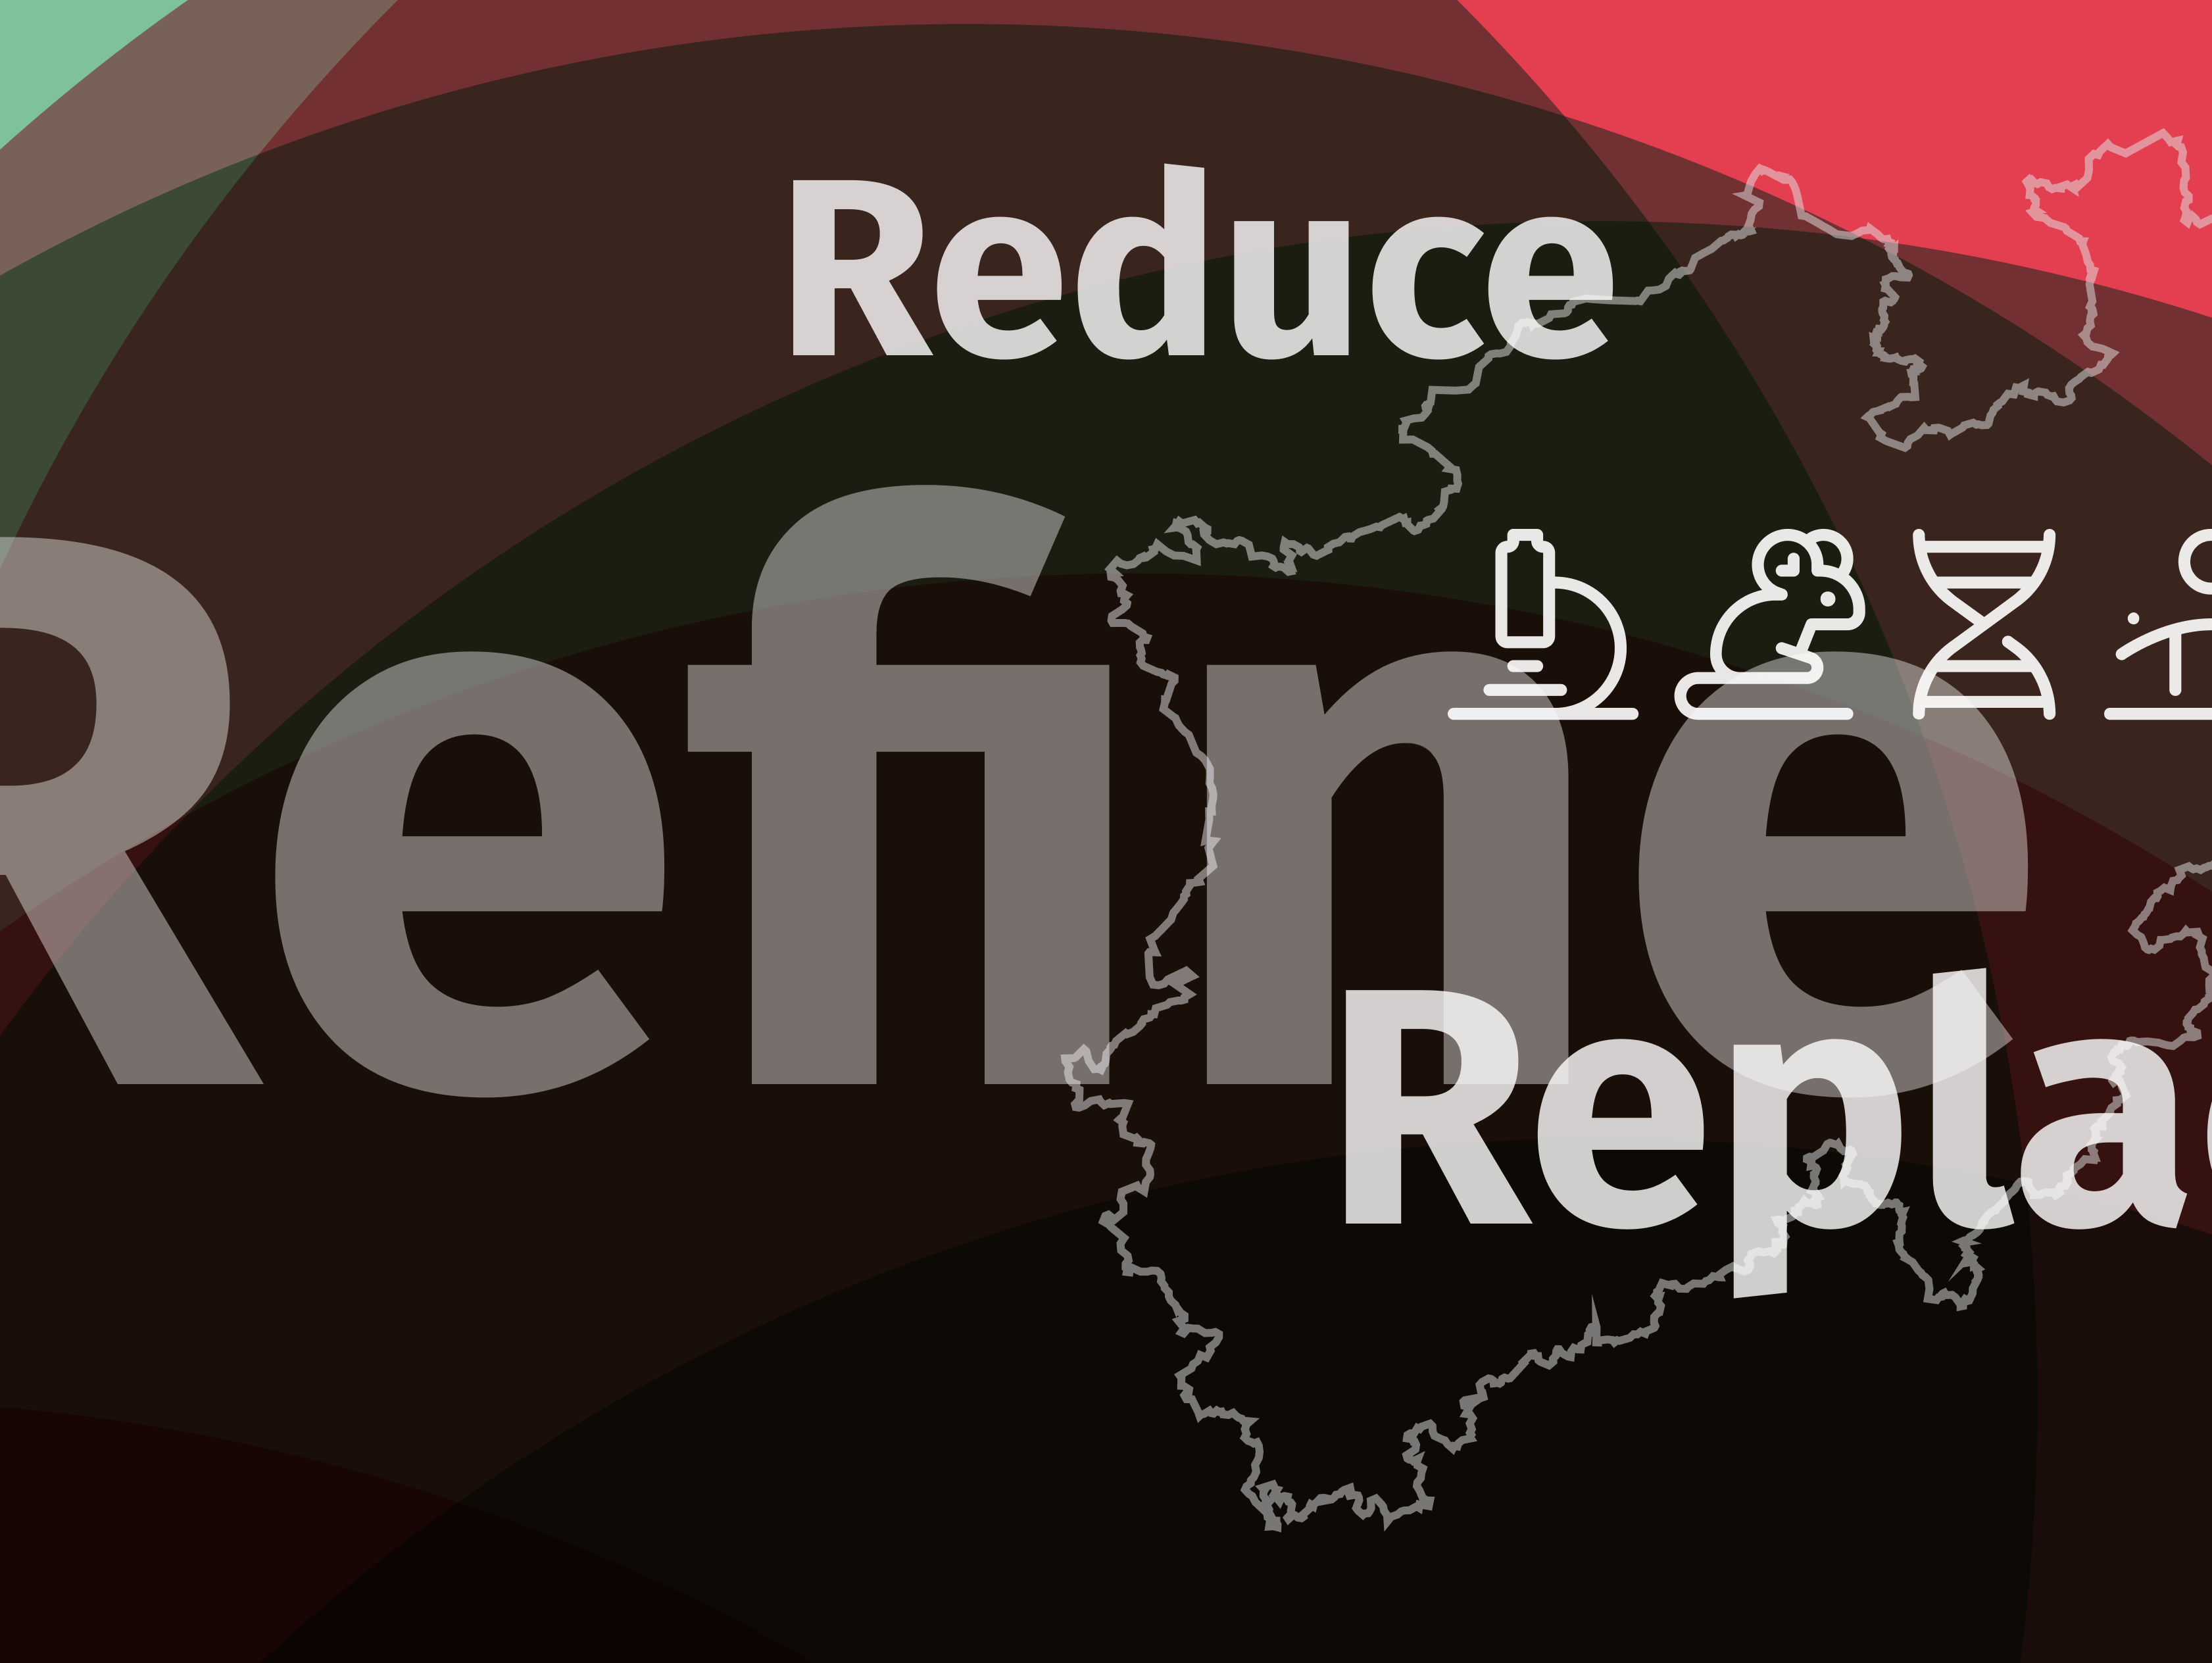 Grafik: Reduce Refine Replace